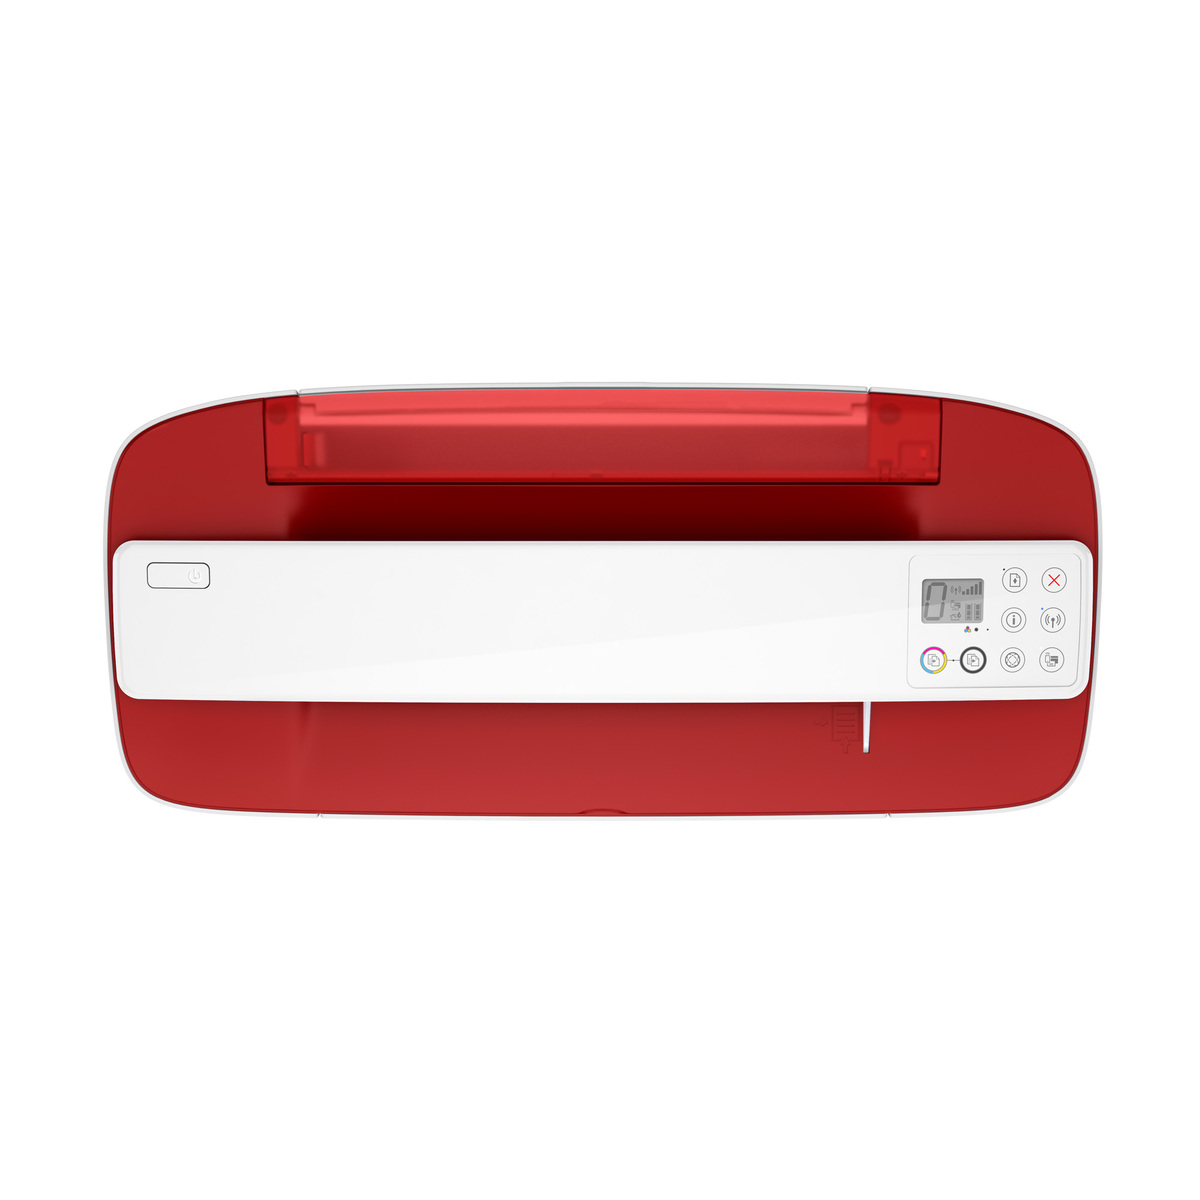 HP Deskjet Ink Advantage 3788 Wireless All-in-One Printer, Red, T8W49C